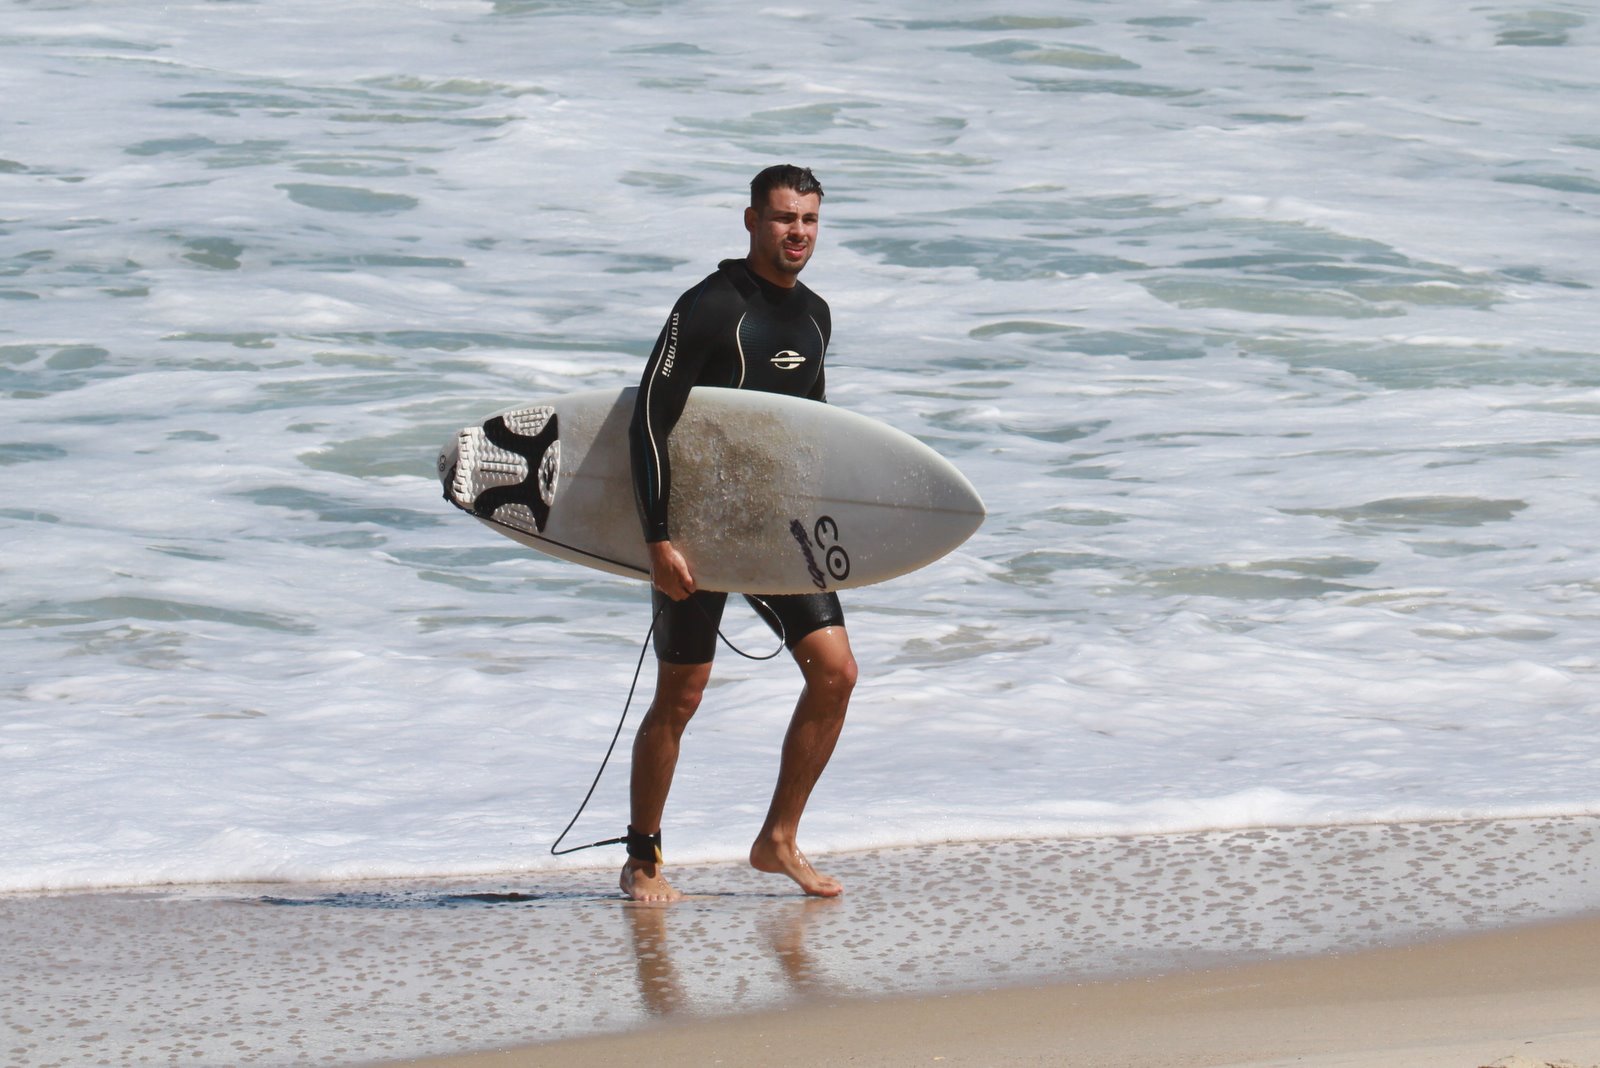 O galã Cauã Reymond aproveitou a maioria das folgas para se dedicar ao seu hobby preferido: o surfe